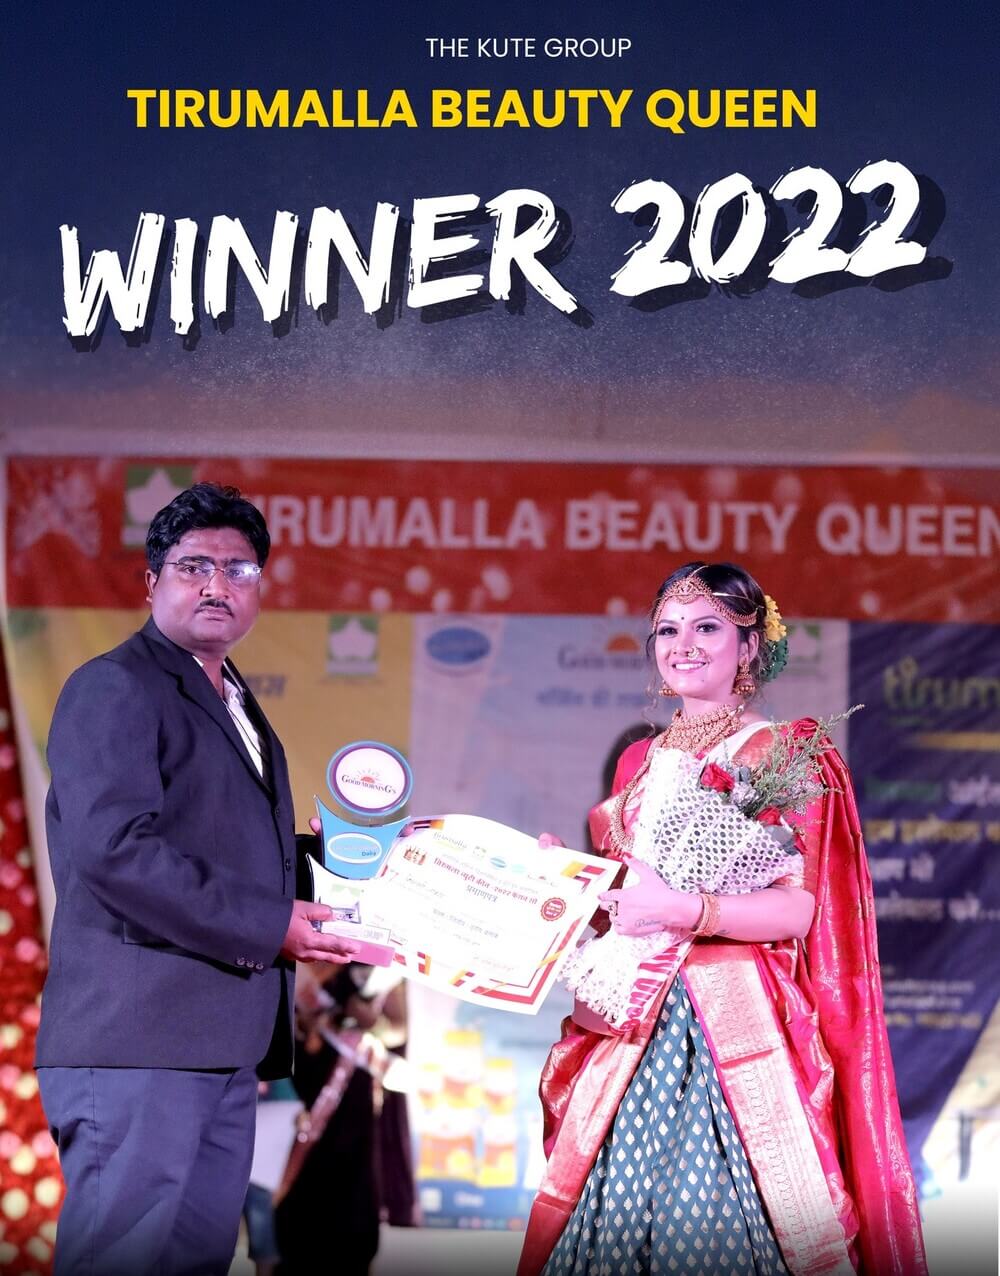 Tirumalla Beauty Queen Contest in Ichalkaranji